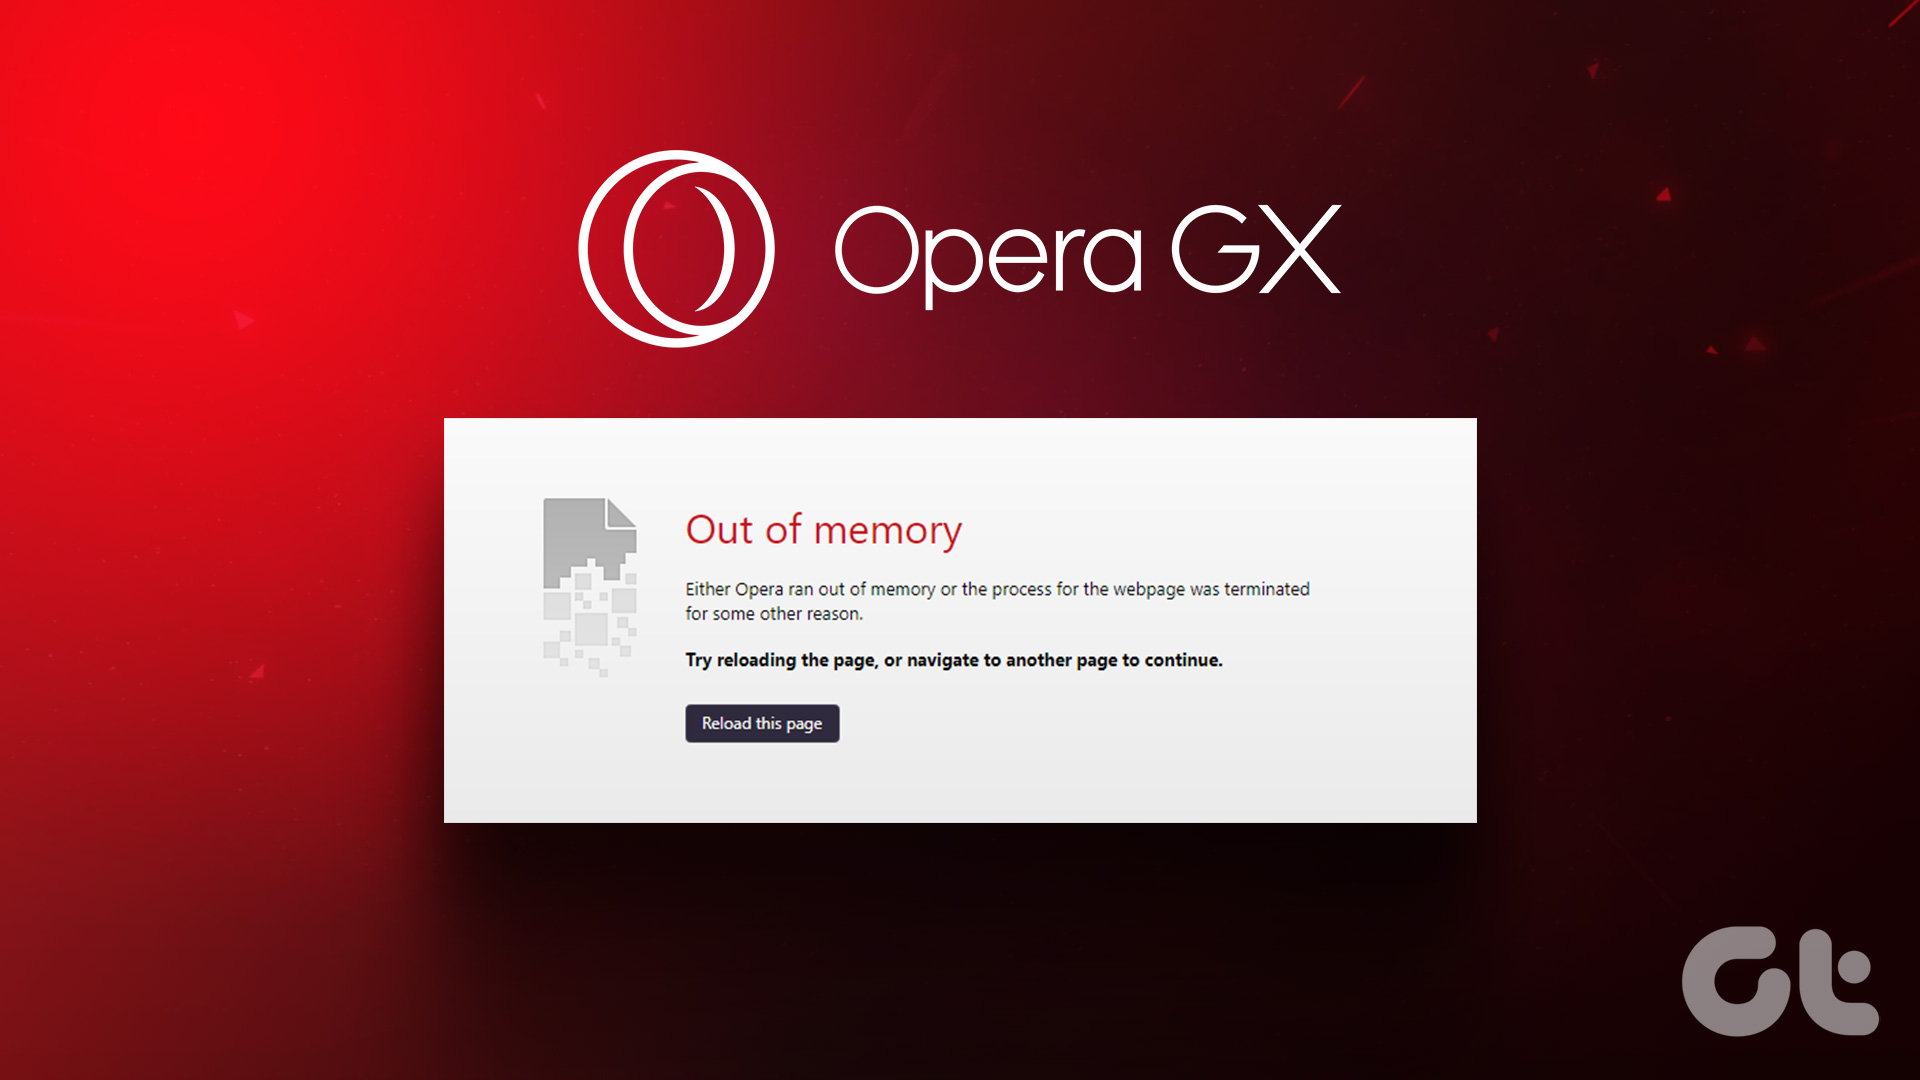 How to Limit Opera GX RAM Usage